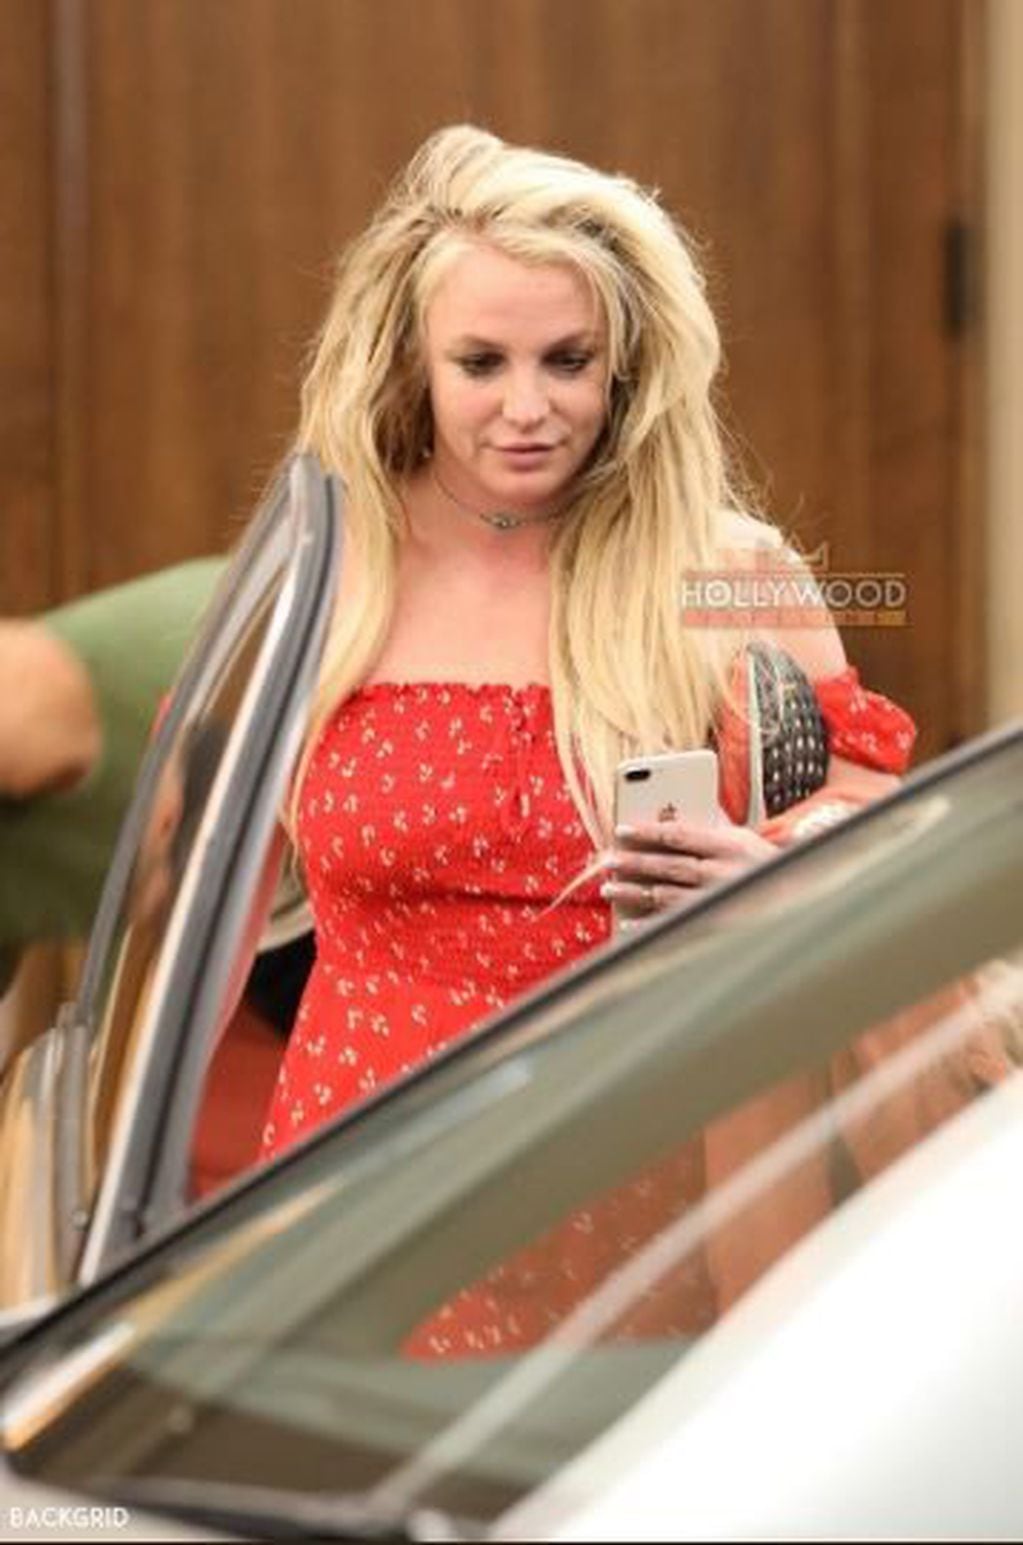 La prensa y los fans de Britney Spears expresaron su preocupación en las redes sociales al verla muy desmejorada